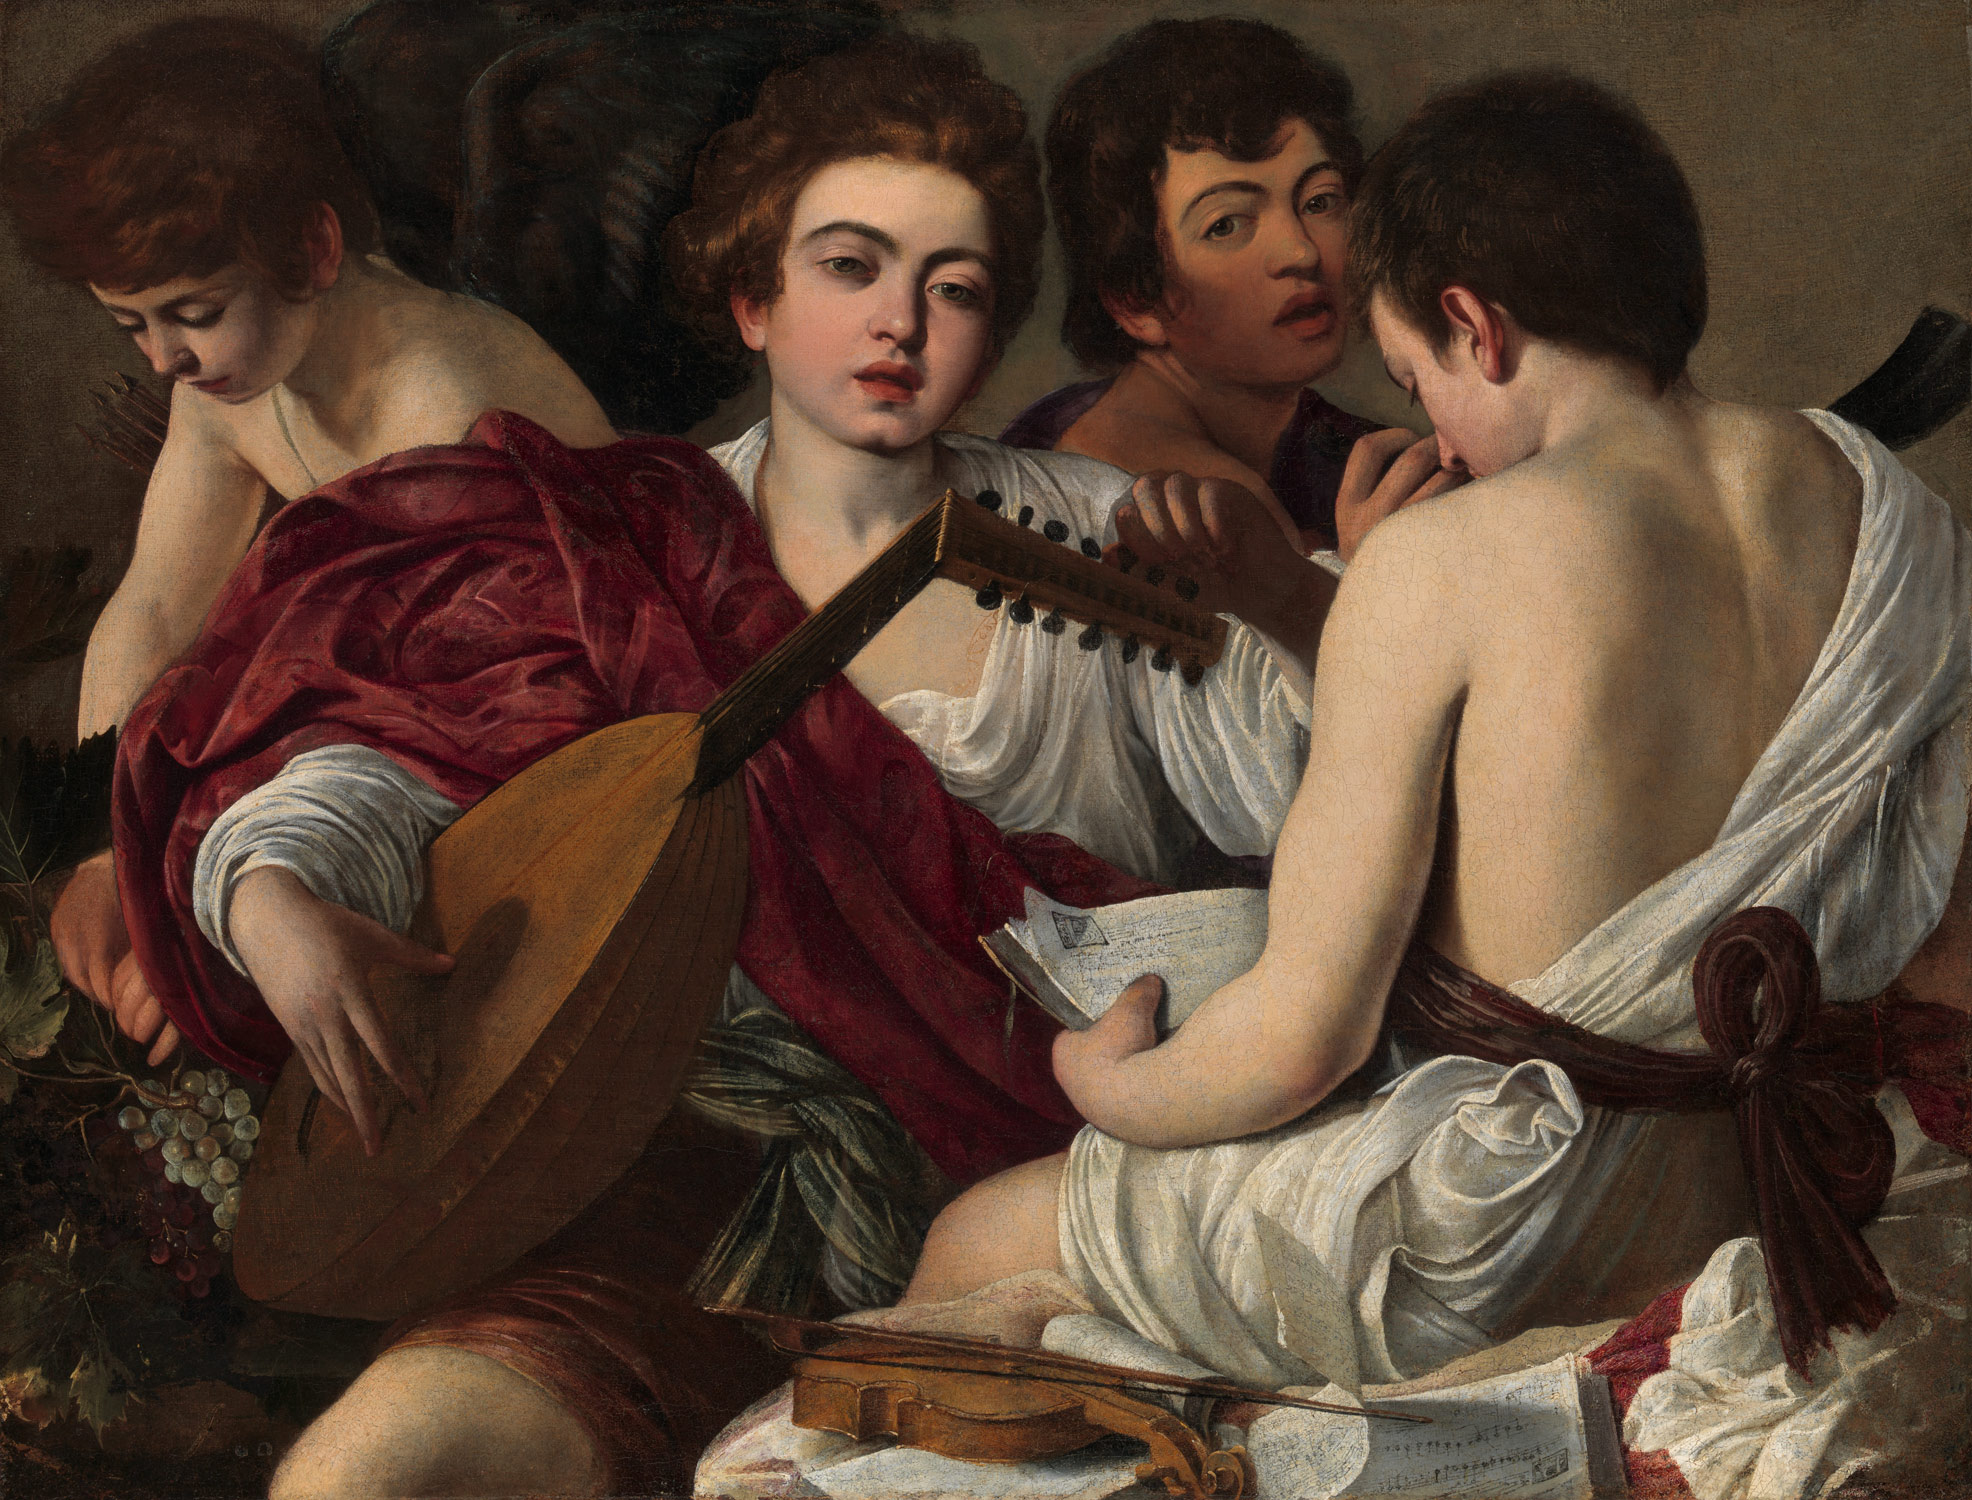 Muzicienii by  Caravaggio - 1597 - 92,07 x 118,42 cm 